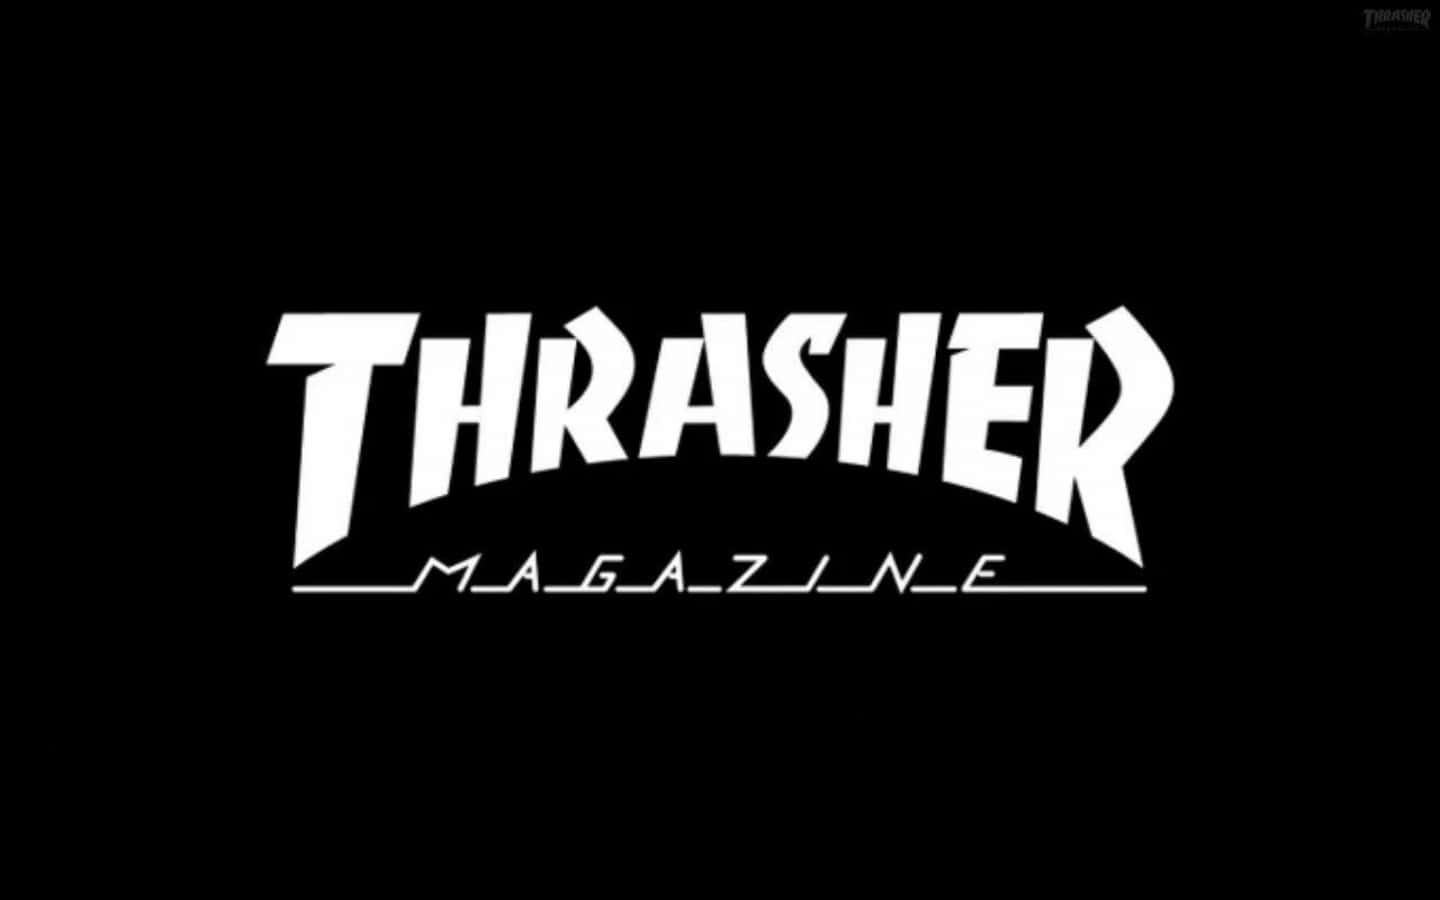 Thrasher Magazine Logo On A Black Background